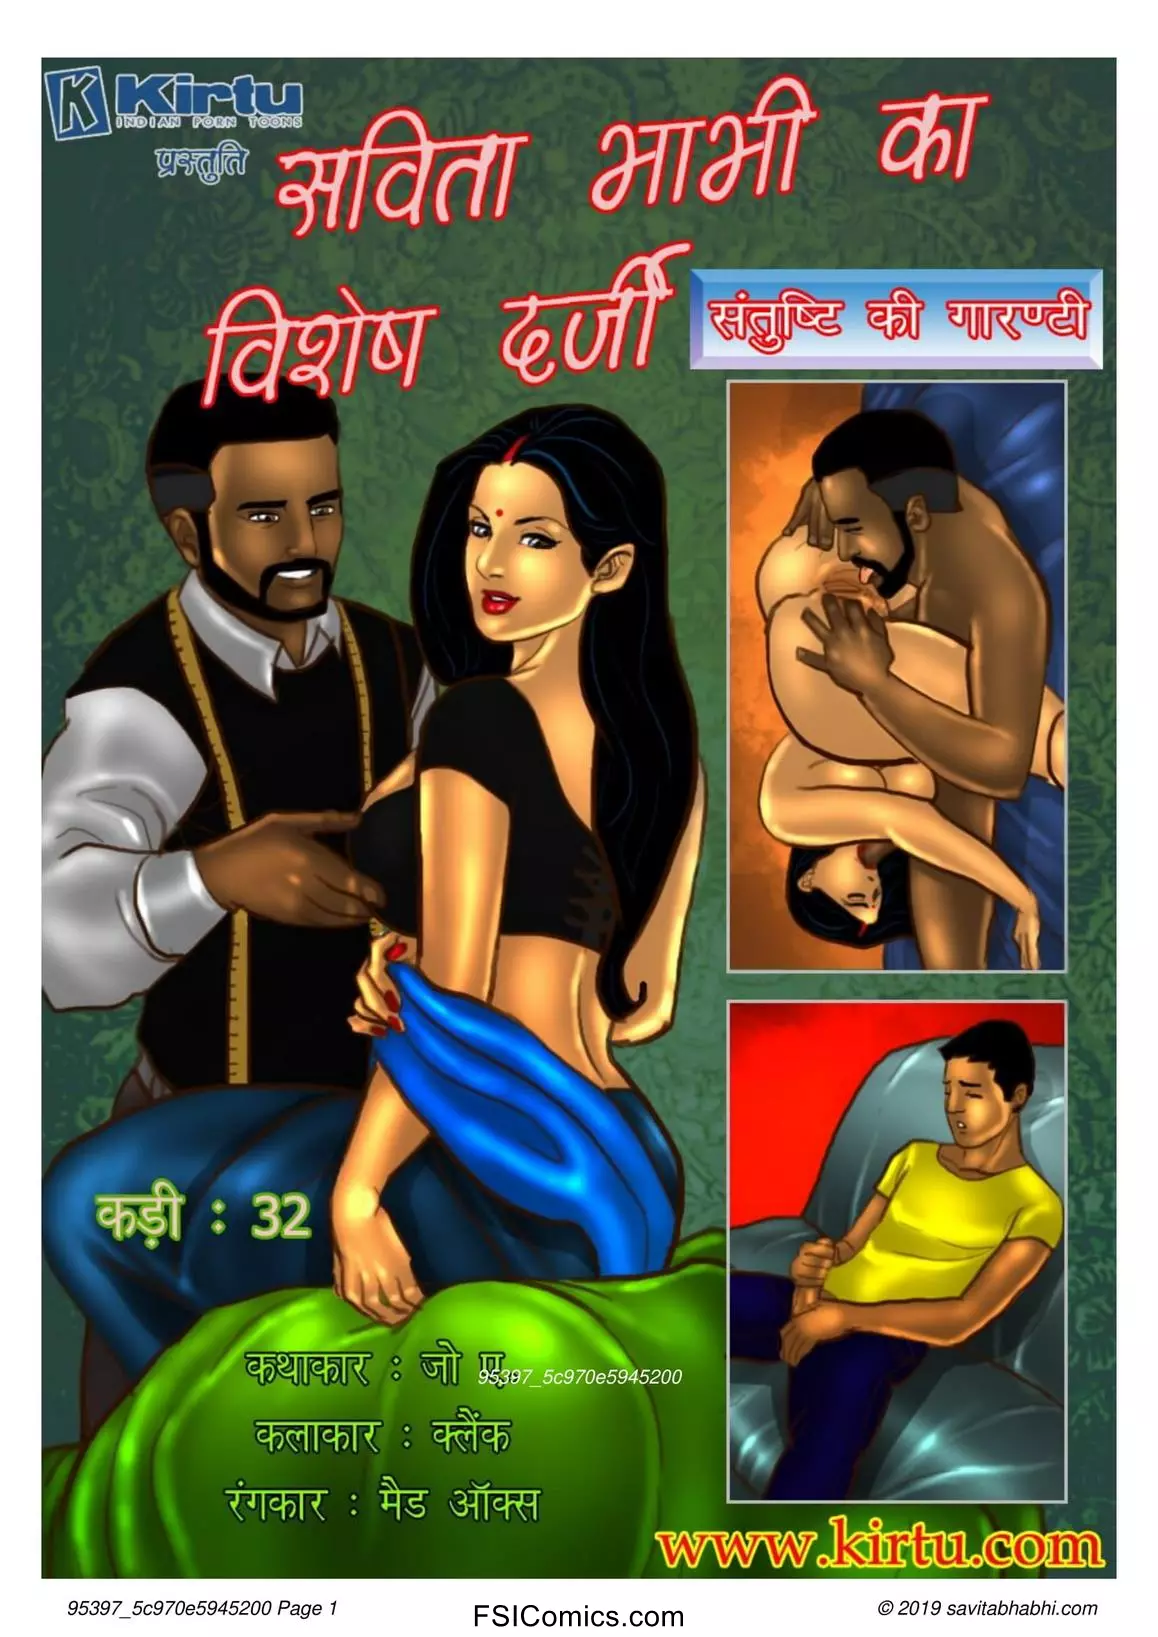 Savita Bhabhi Episode 32 Hindi – Savita Bhabhi Ka Vishesh Darji (सविता भाभी का विशेष दर्जी!!) - 19 - Fsicomics